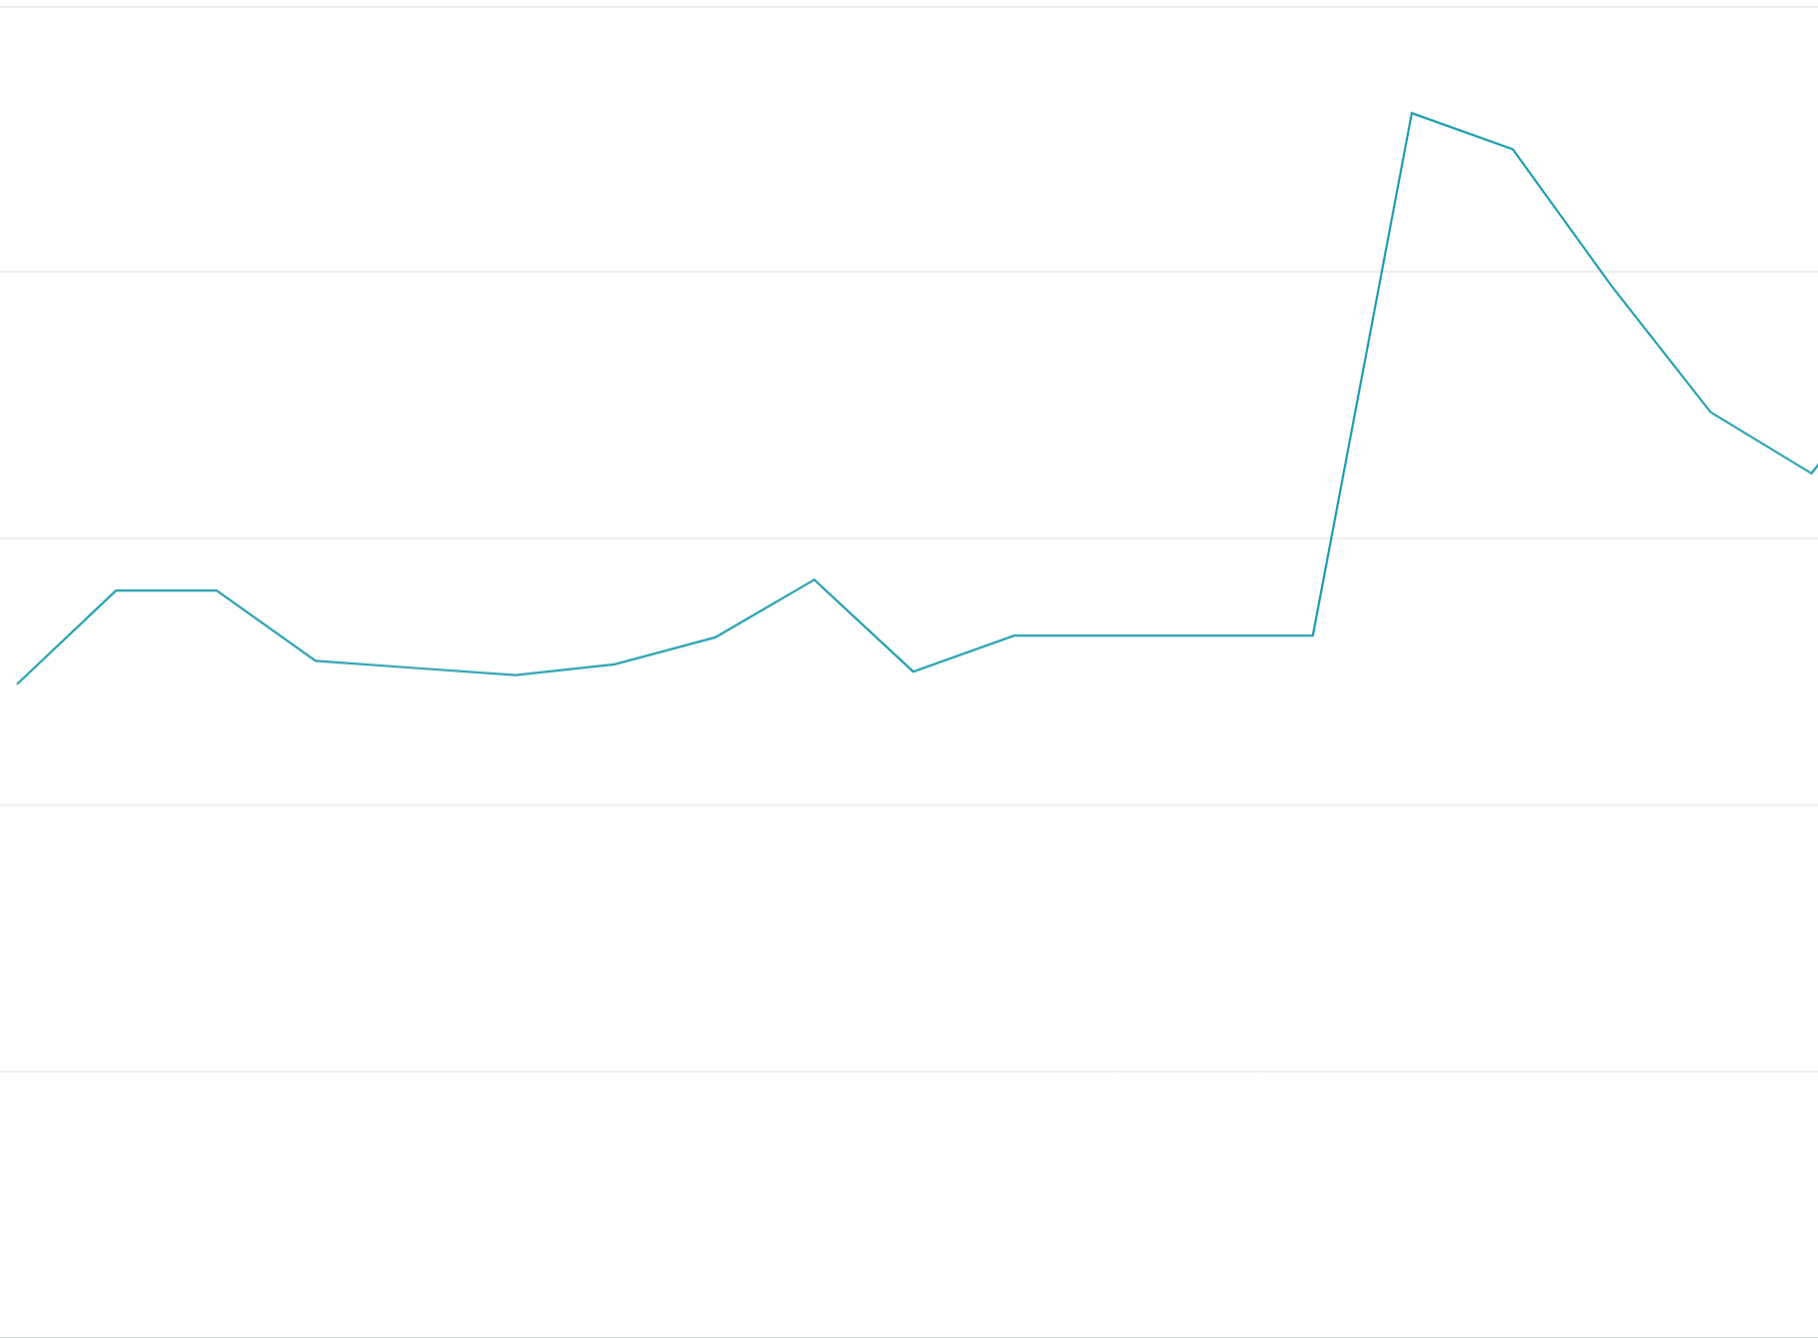 Gráfico de linhas mostrando um pico abrupto.